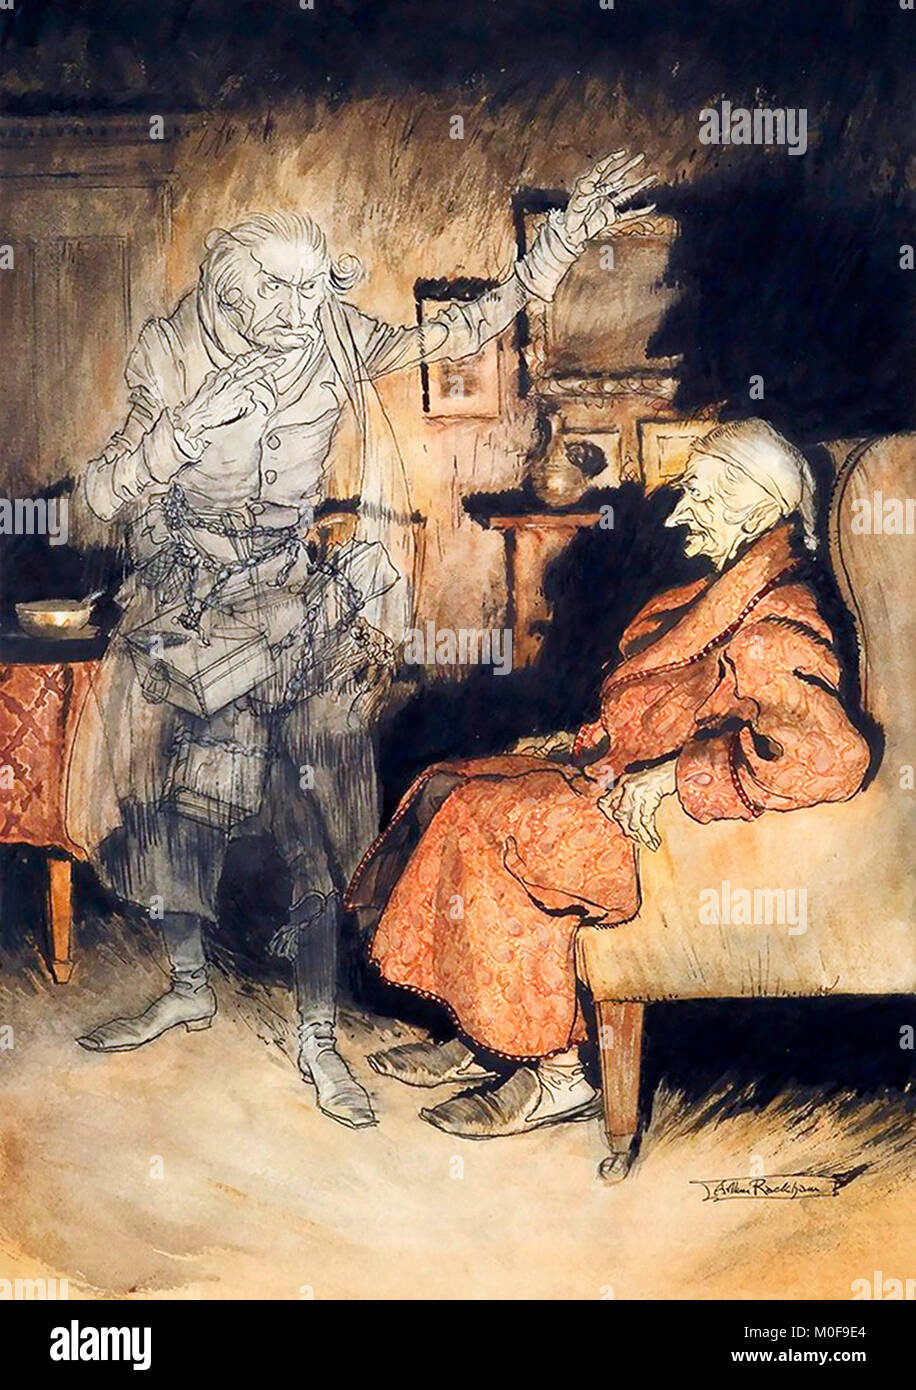 Scrooge et le Fantôme de Marley par Arthur Rackham, Plume, encre et aquarelle, de Dickens's 'A Christmas Carol', 1915 Banque D'Images